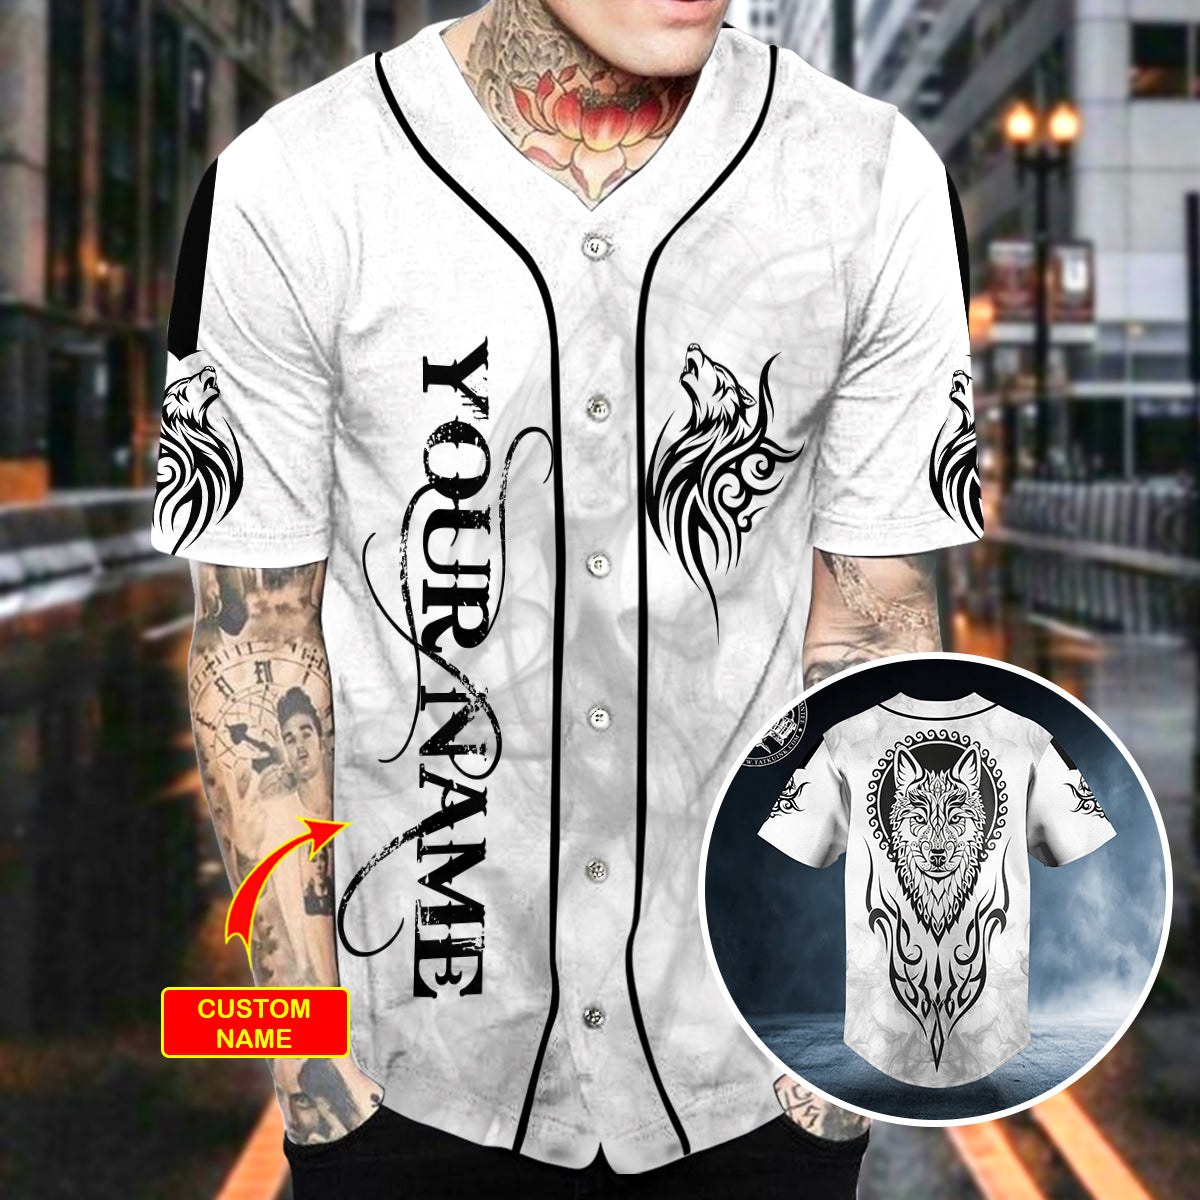 black white yinyang wolf viking tattoo personalized baseball jersey bsj 603 yi51d